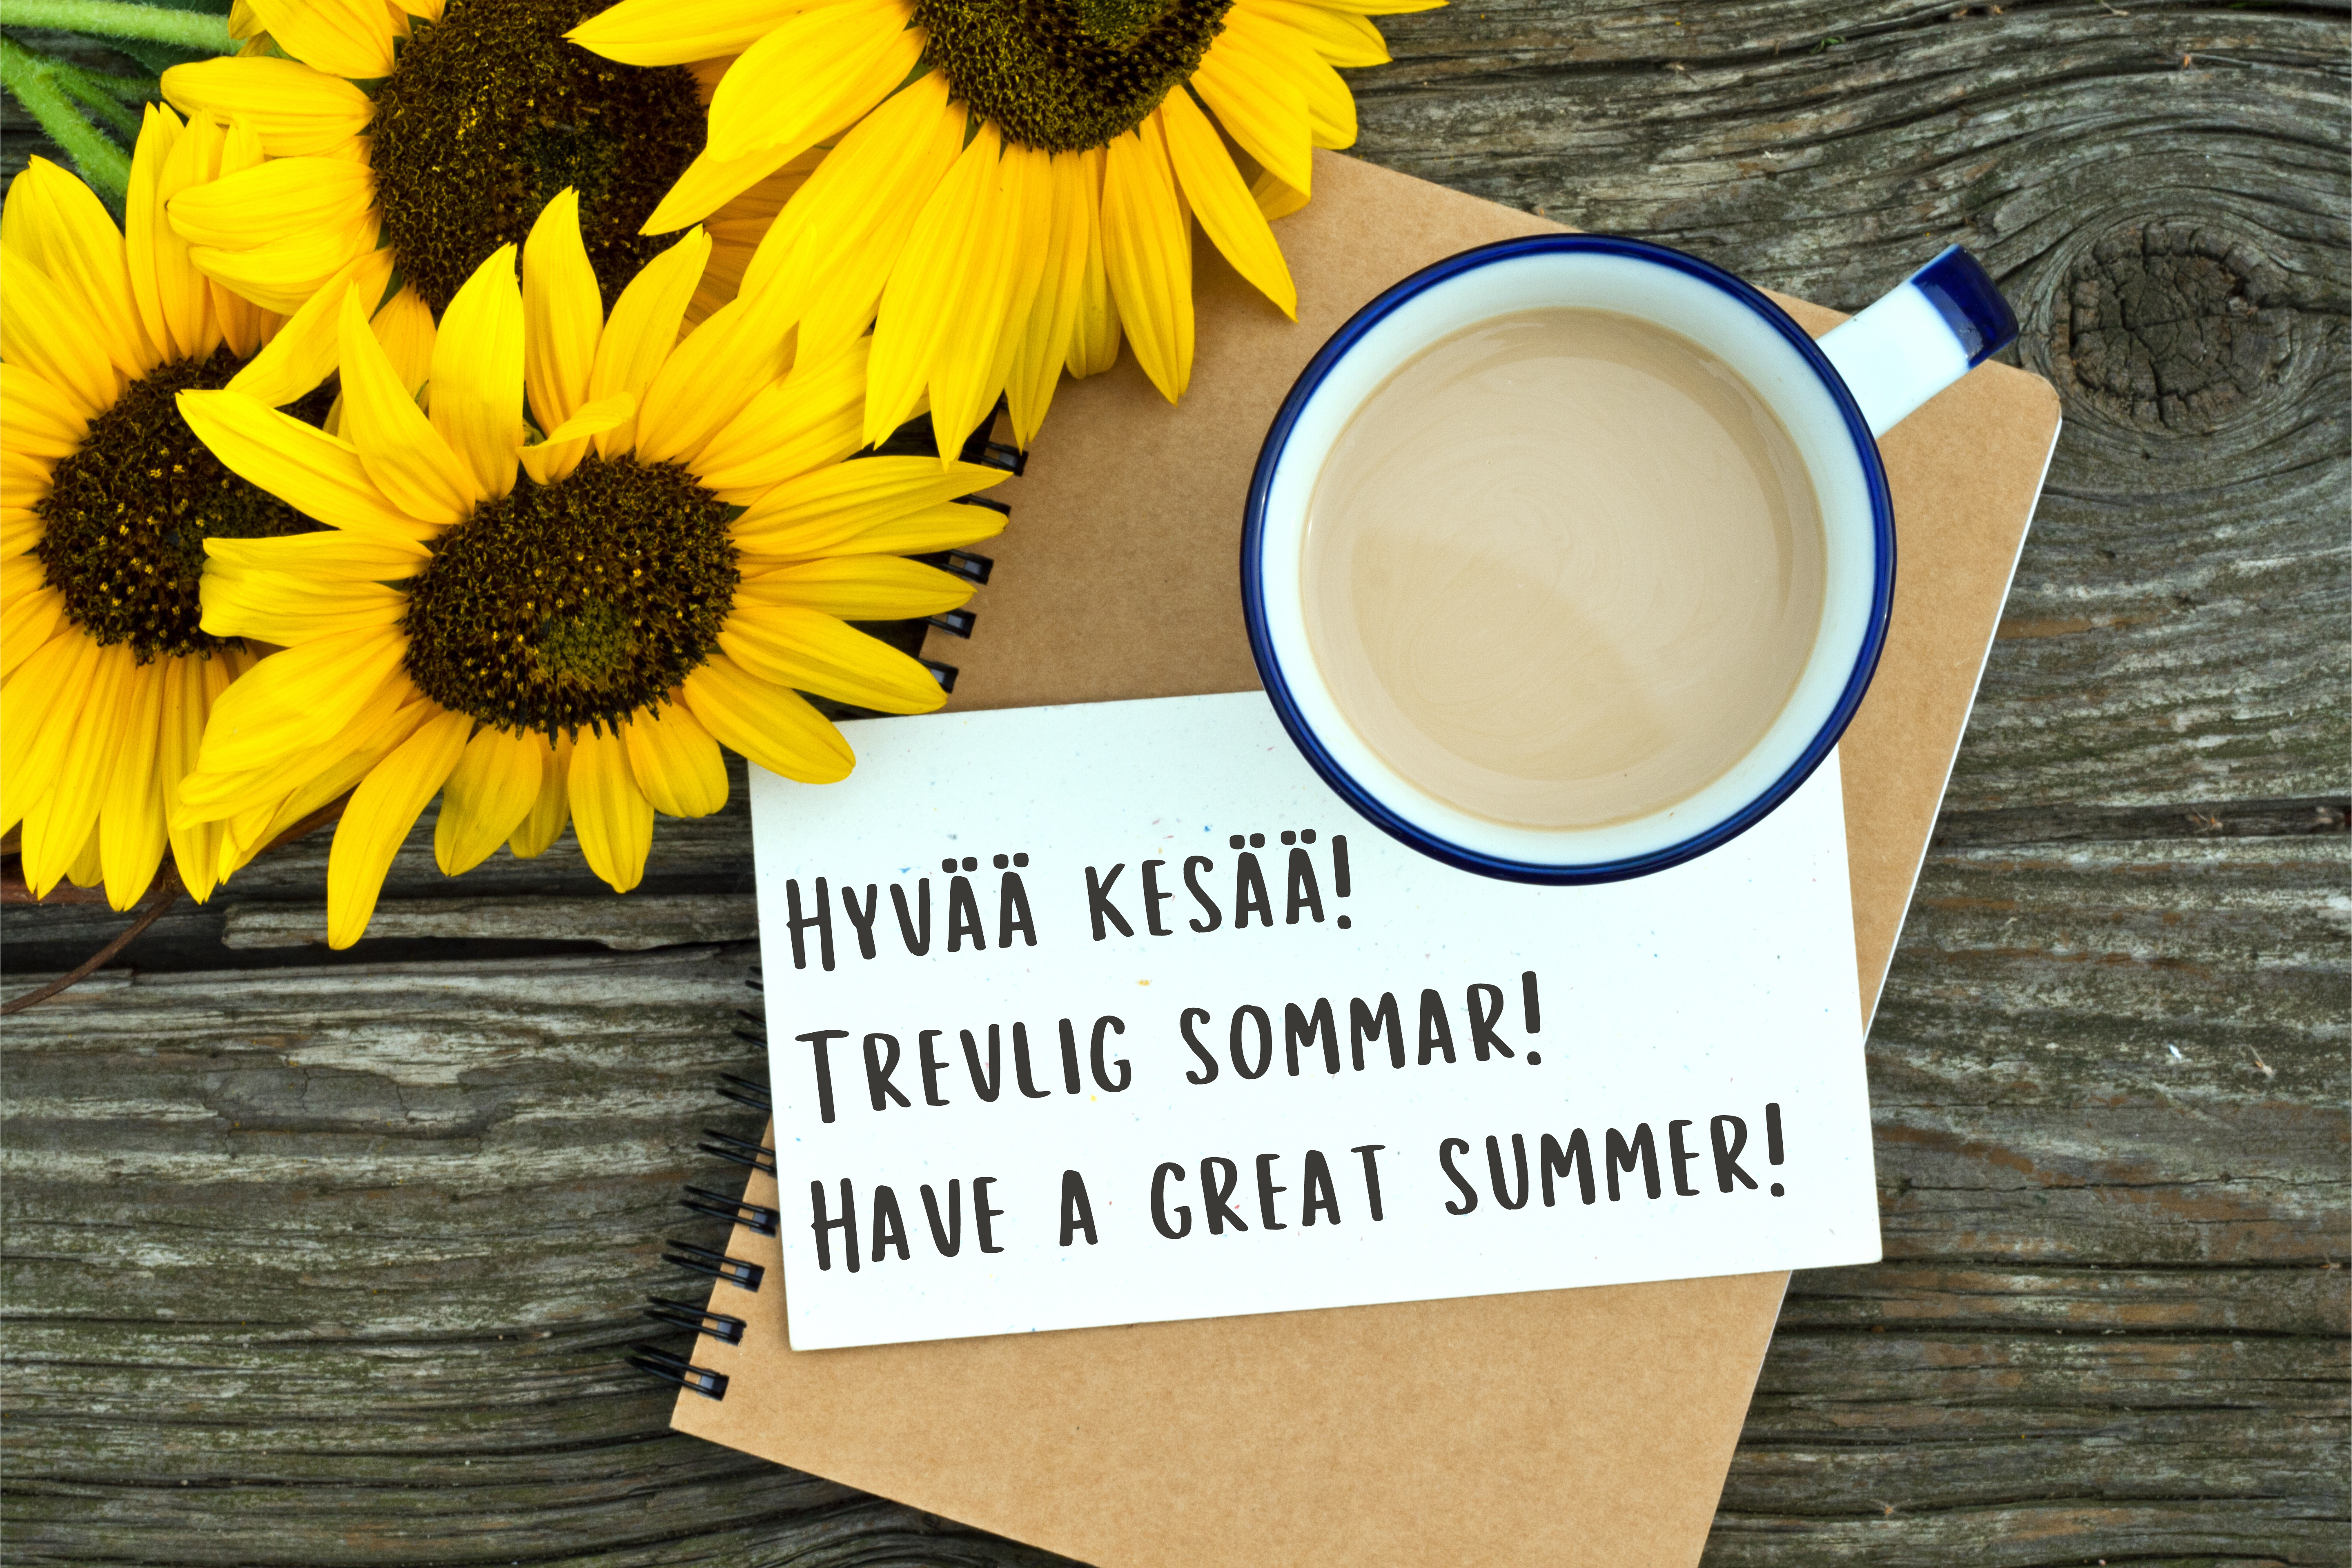 Pöydällä auringonkukkia, kahvikuppi ja lappu jossa lukee "Hyvää kesää! Trevlig sommar! Have a great summer!"